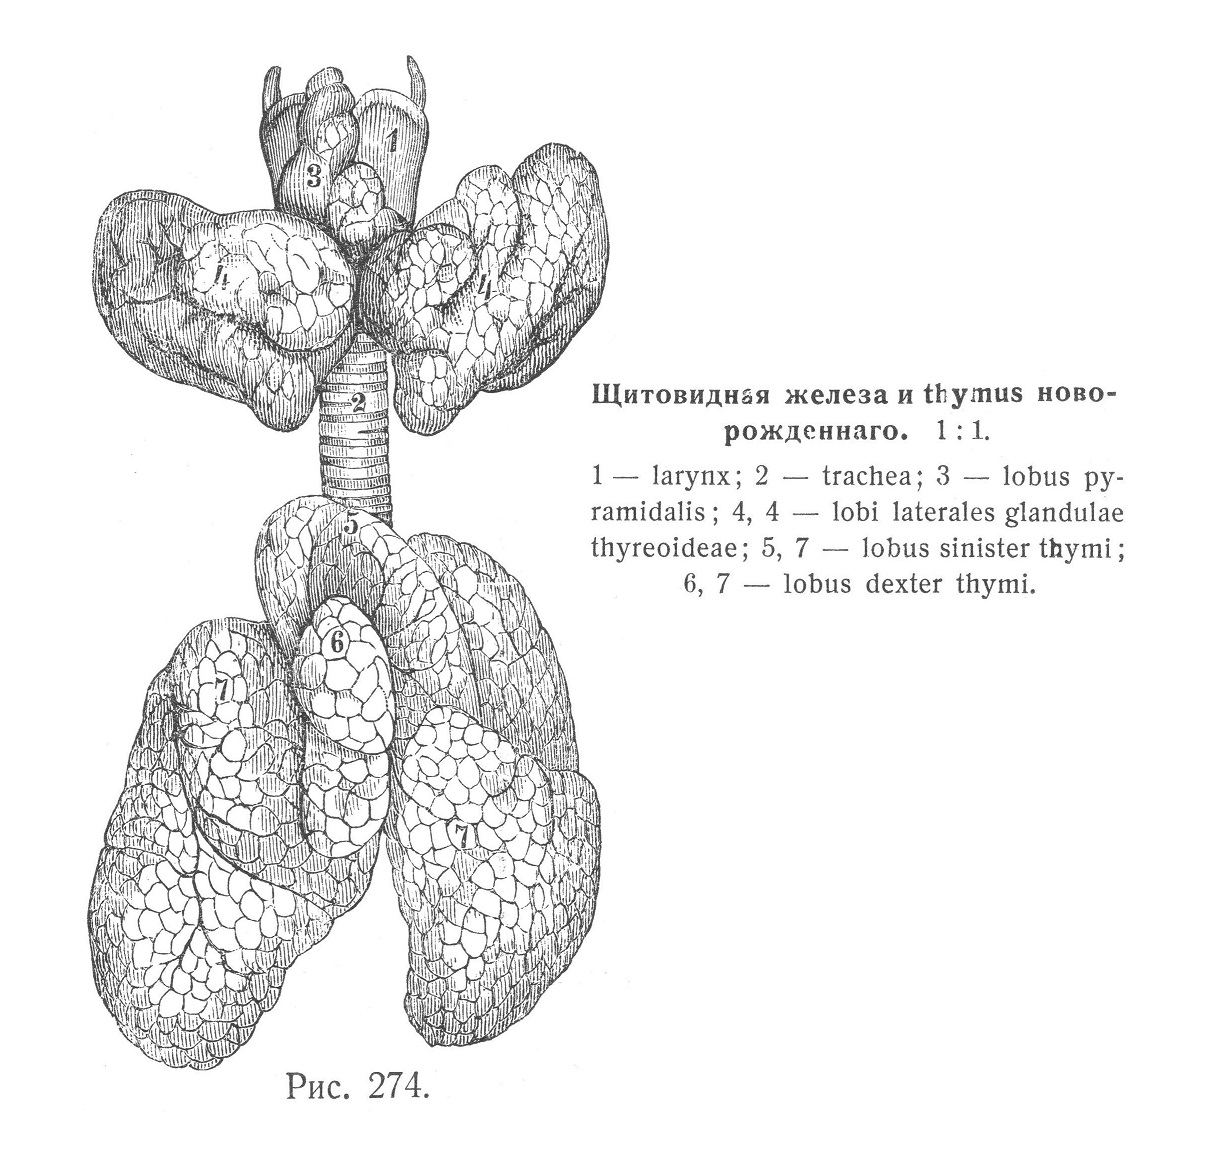 Щитовидная железа и thymus новорожденного